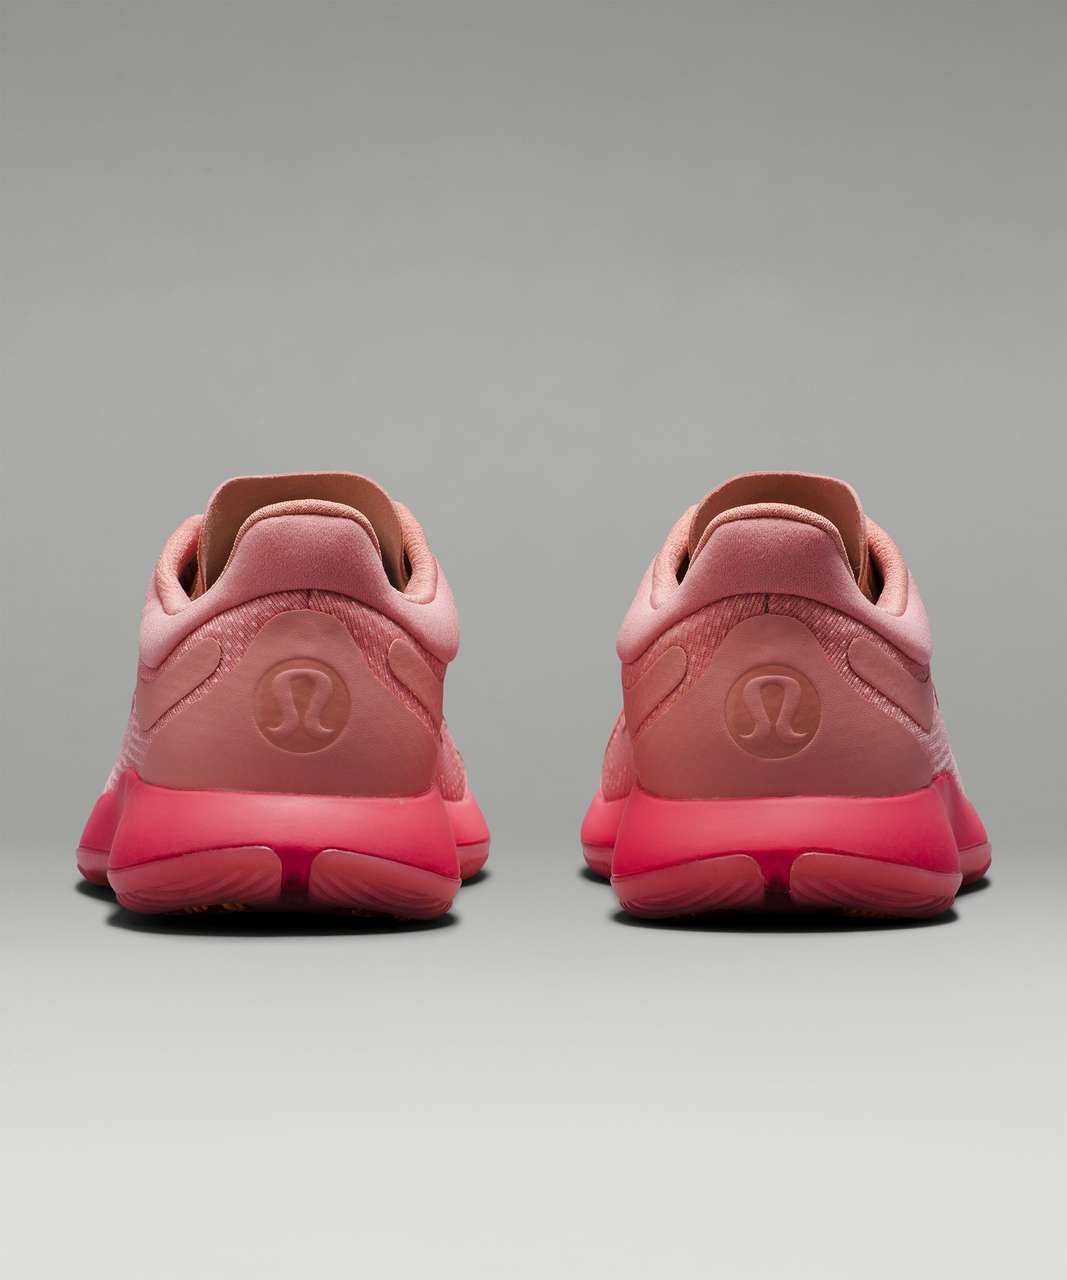 NWOB Lululemon Blissfeel Running Shoe Size 8 Pink Peony/Sunset/Alpine White